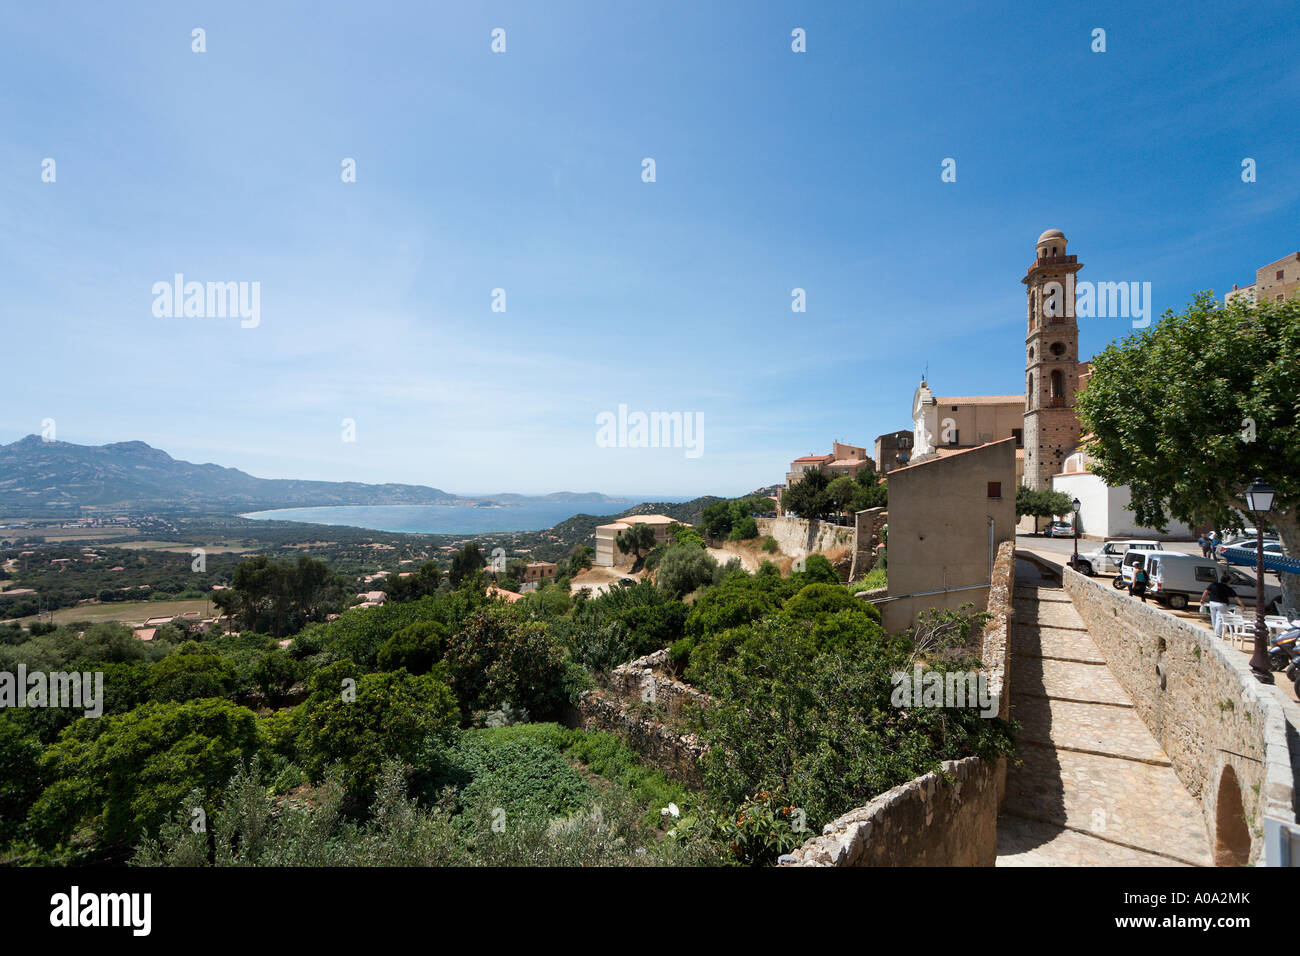 Vue sur le centre du village et l'église à la recherche vers la côte, Lumio, La Balagne, Corse, France Banque D'Images